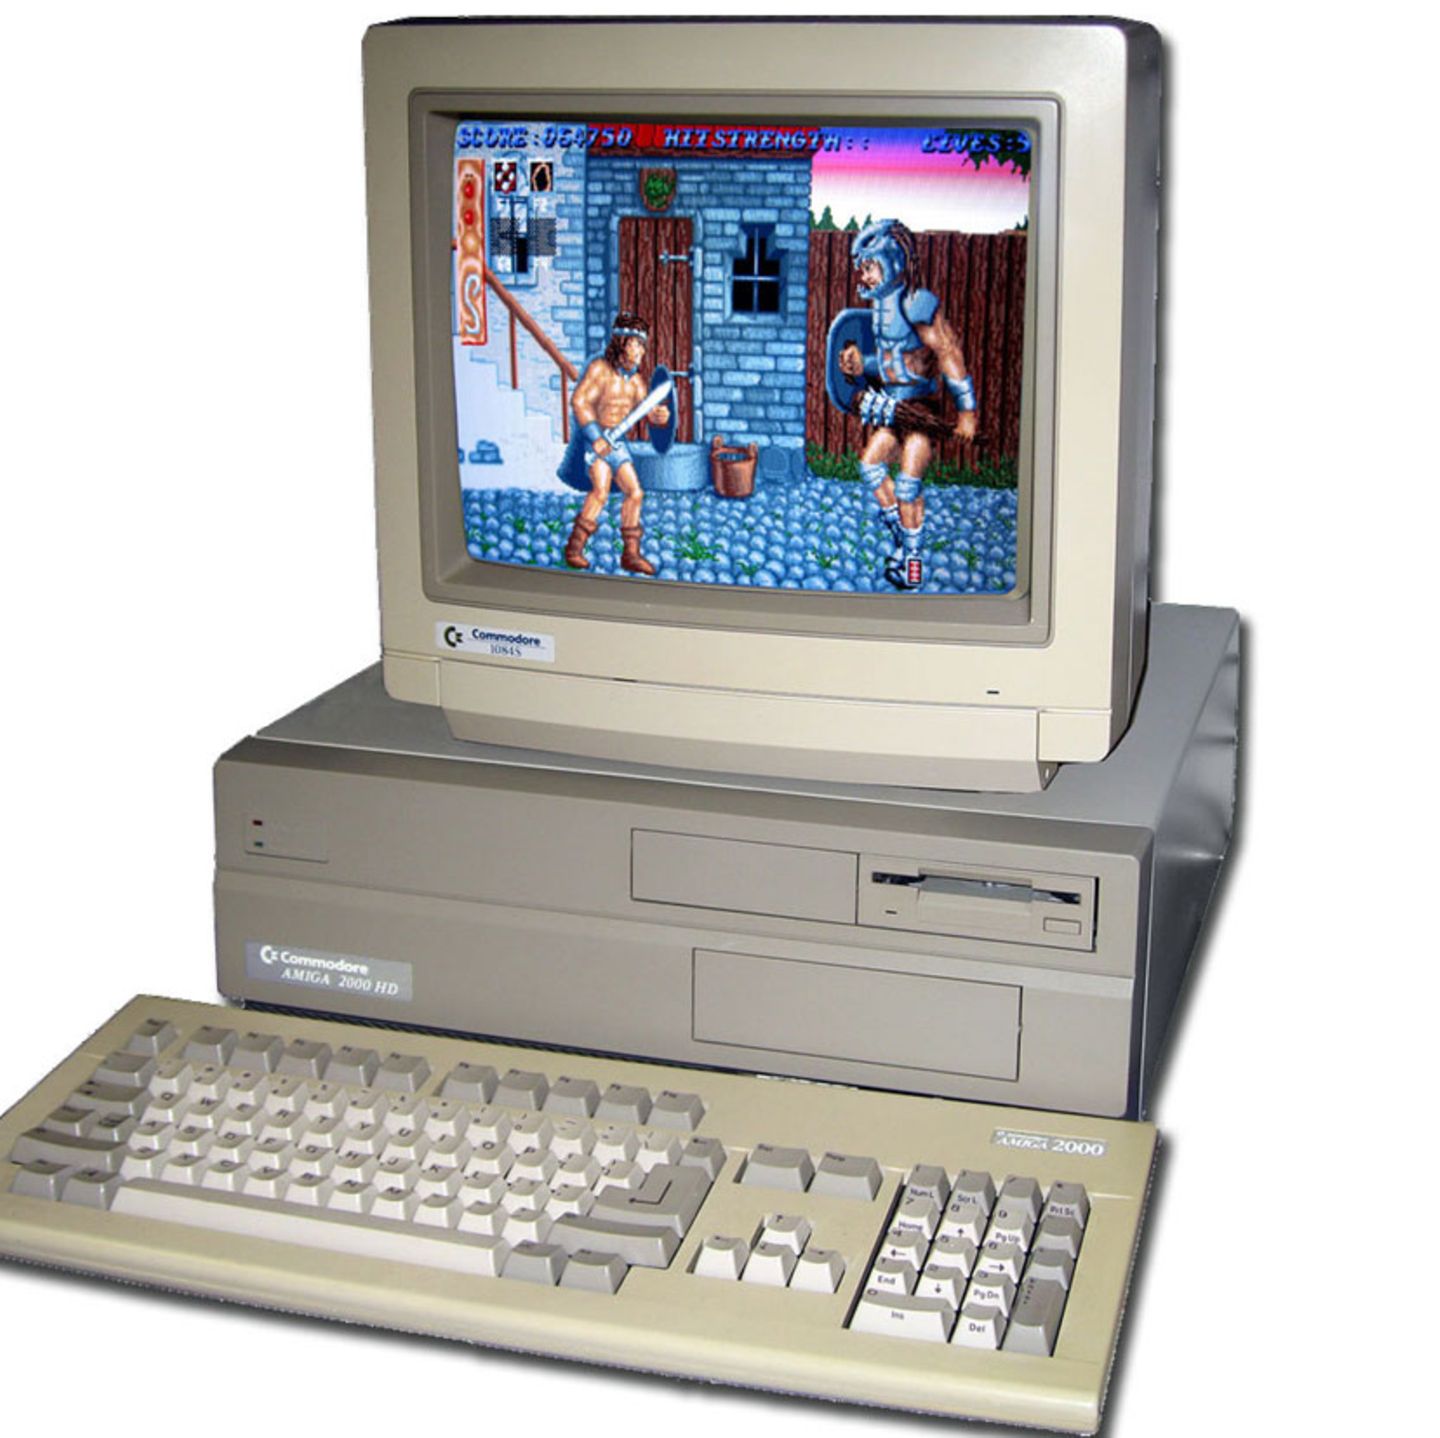 Качество персональных компьютеров. IBM компьютеры 2000. Компьютер Macintosh 2000. Макинтош компьютер Apple 2000. IBM PC 1996.